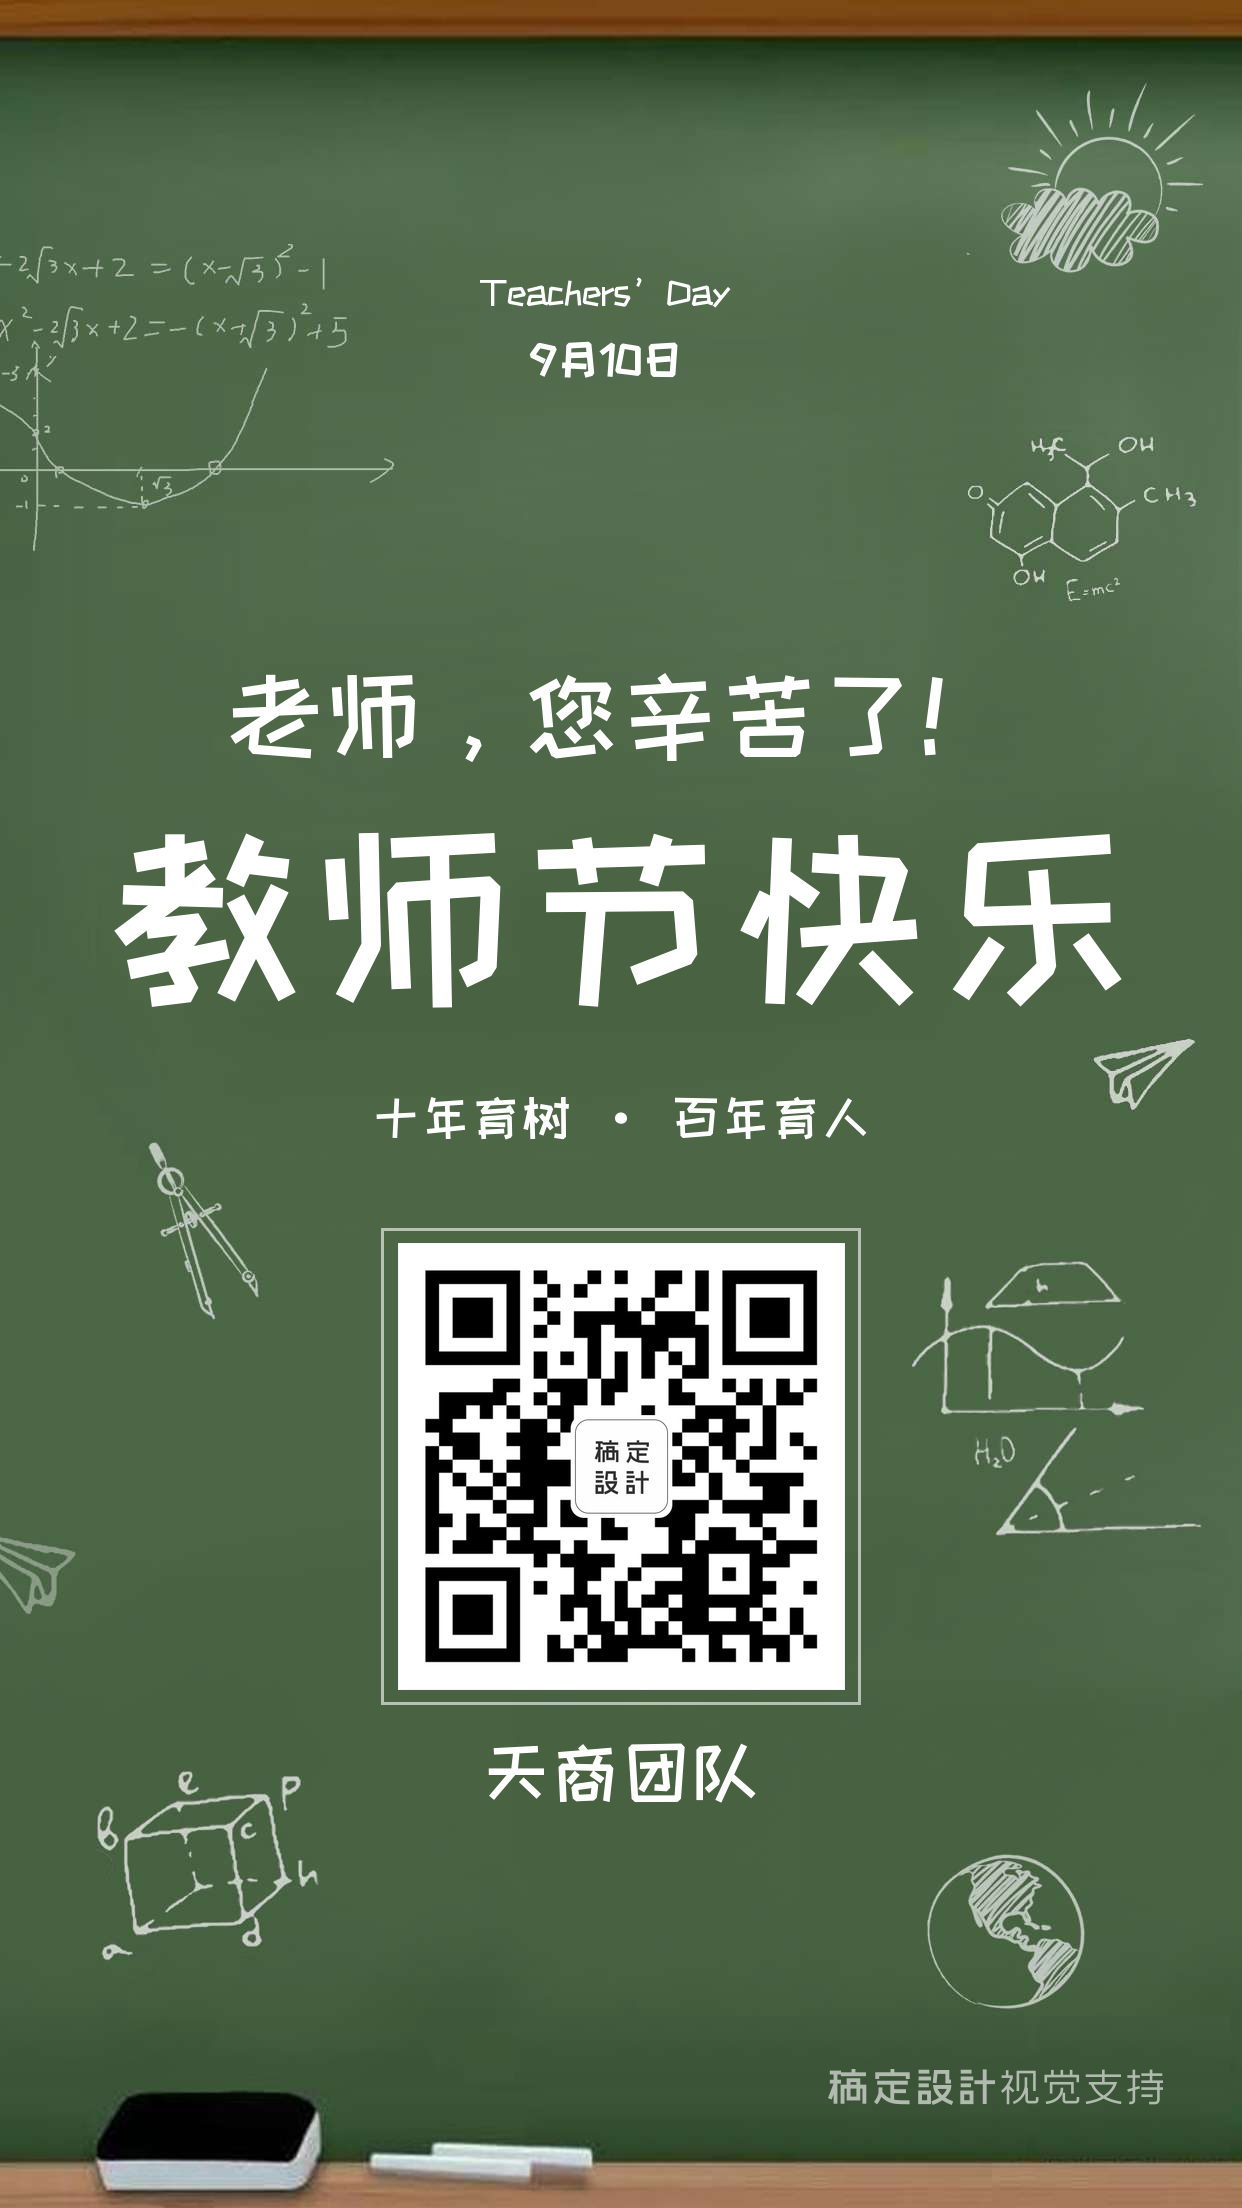 教师节快乐海报